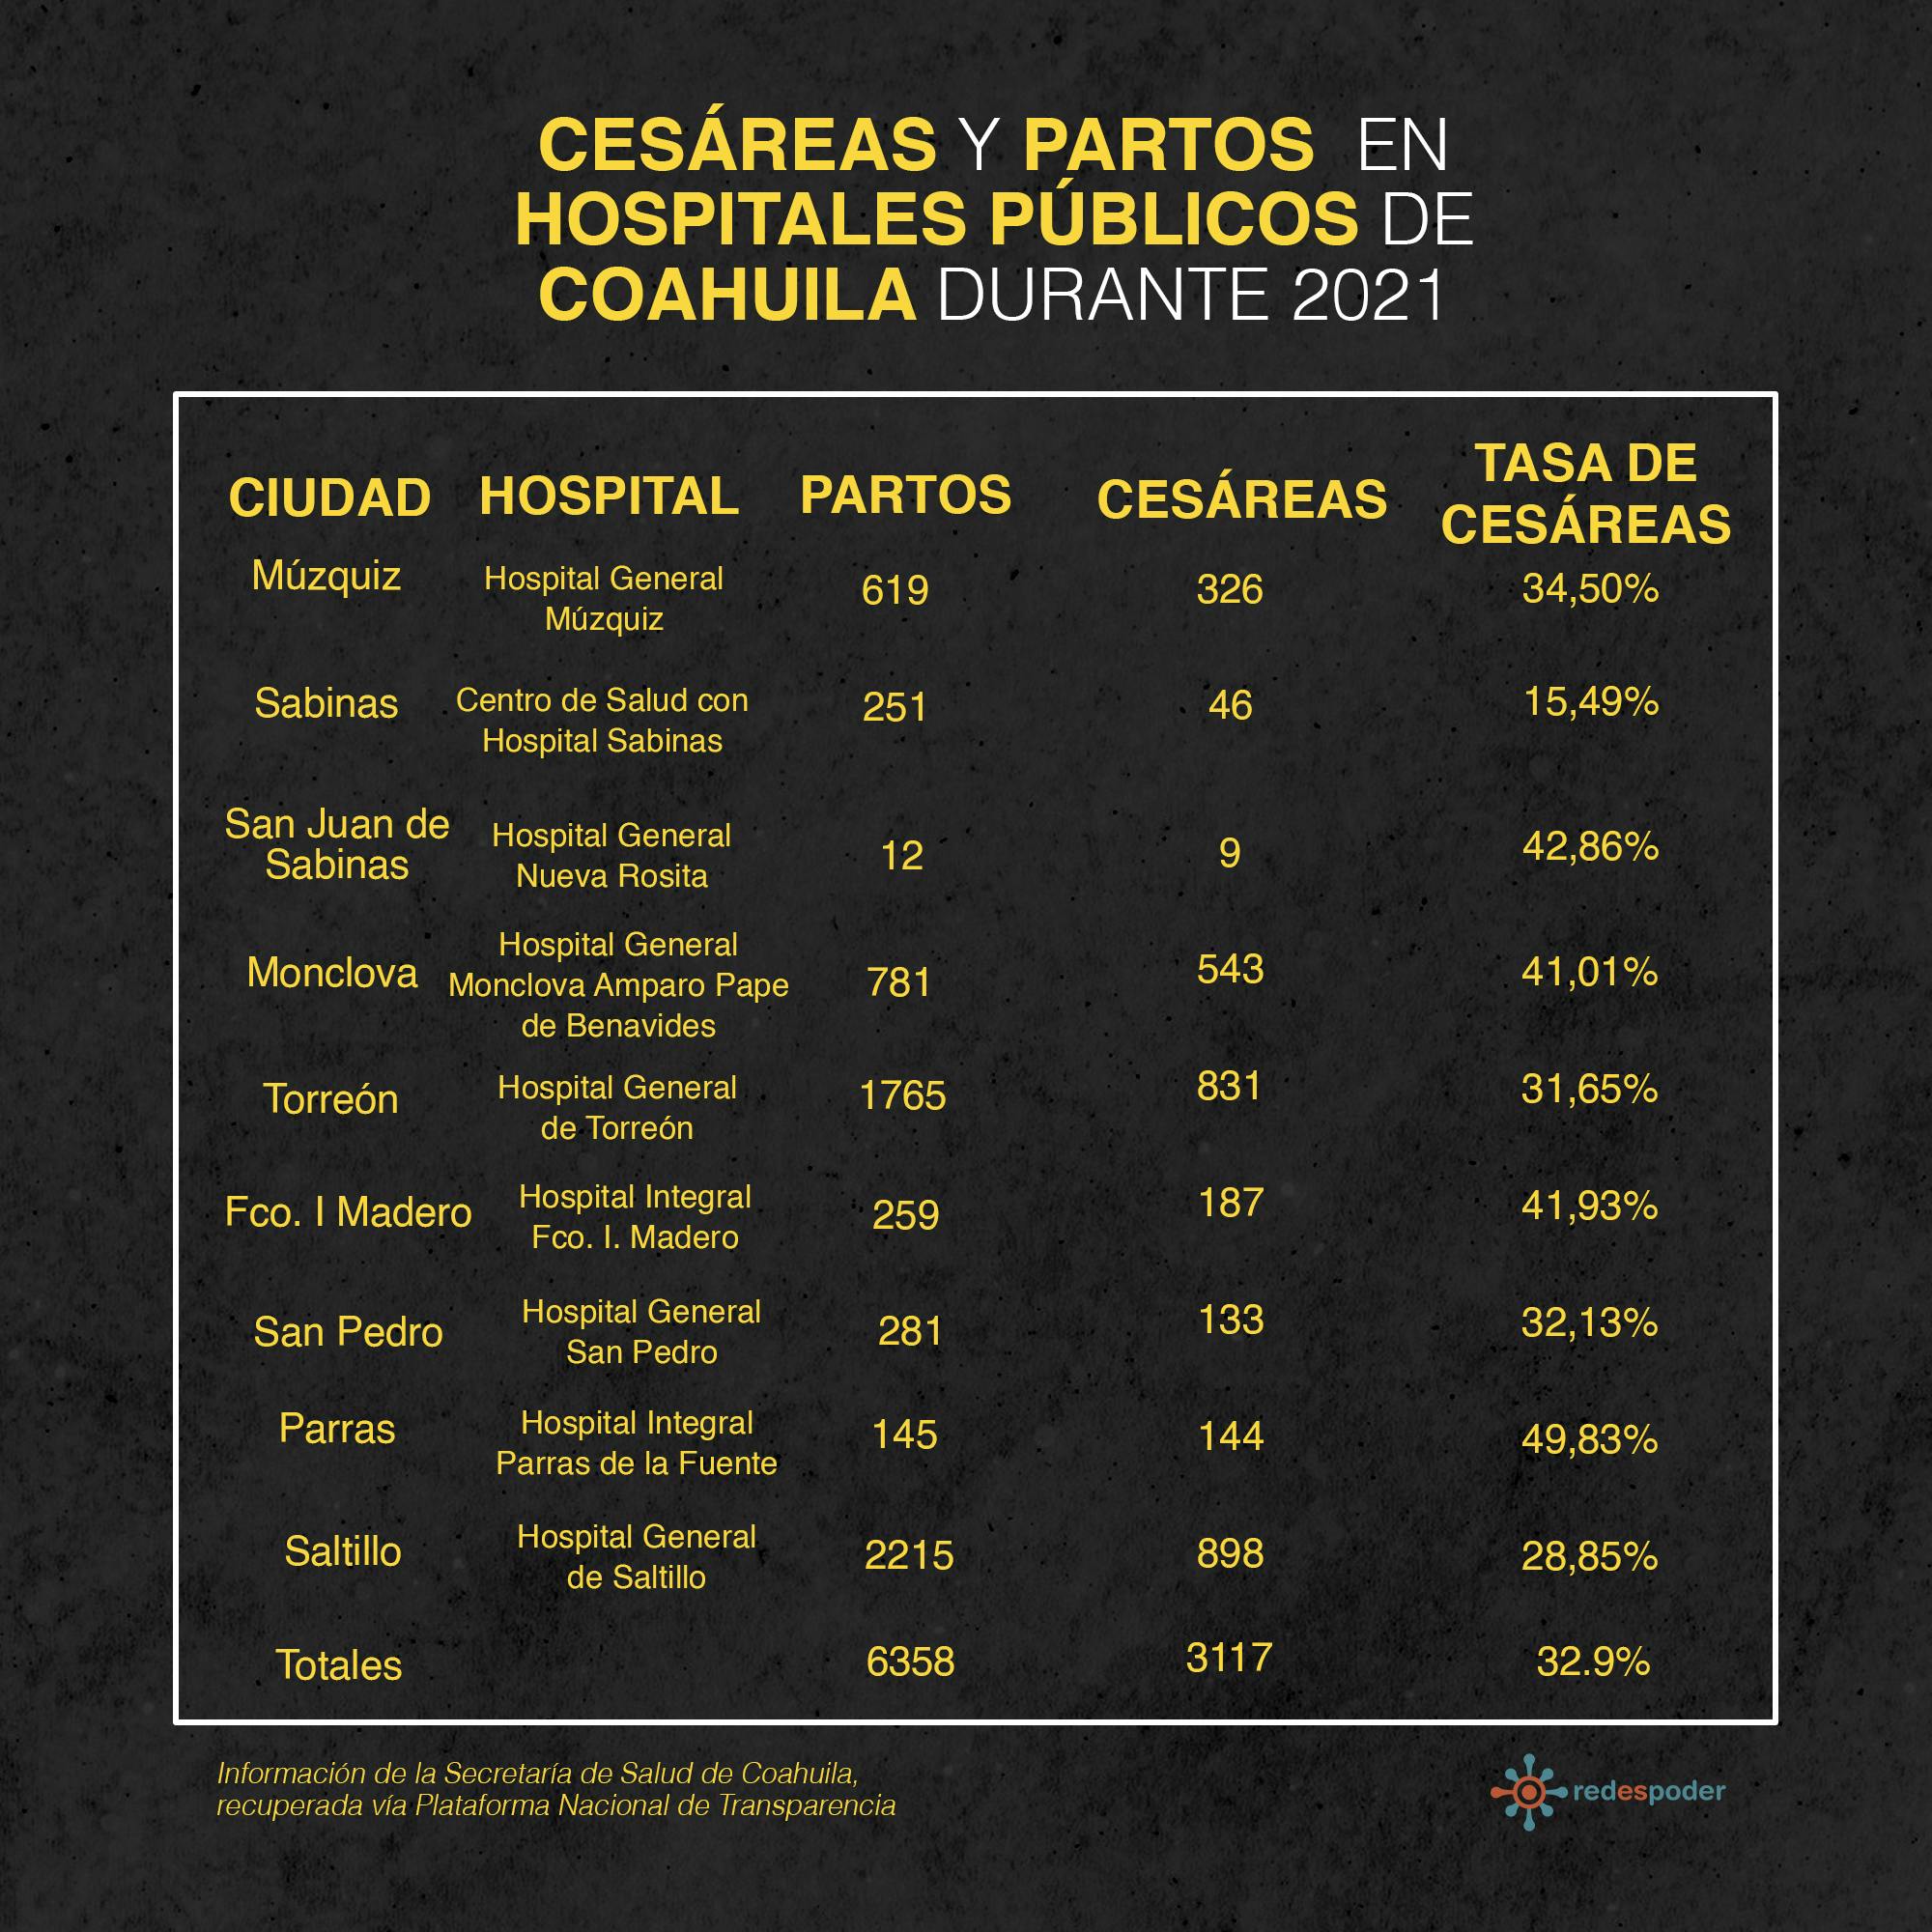 Grafica de cesareas y partos en Coahuila en hispitales publicos